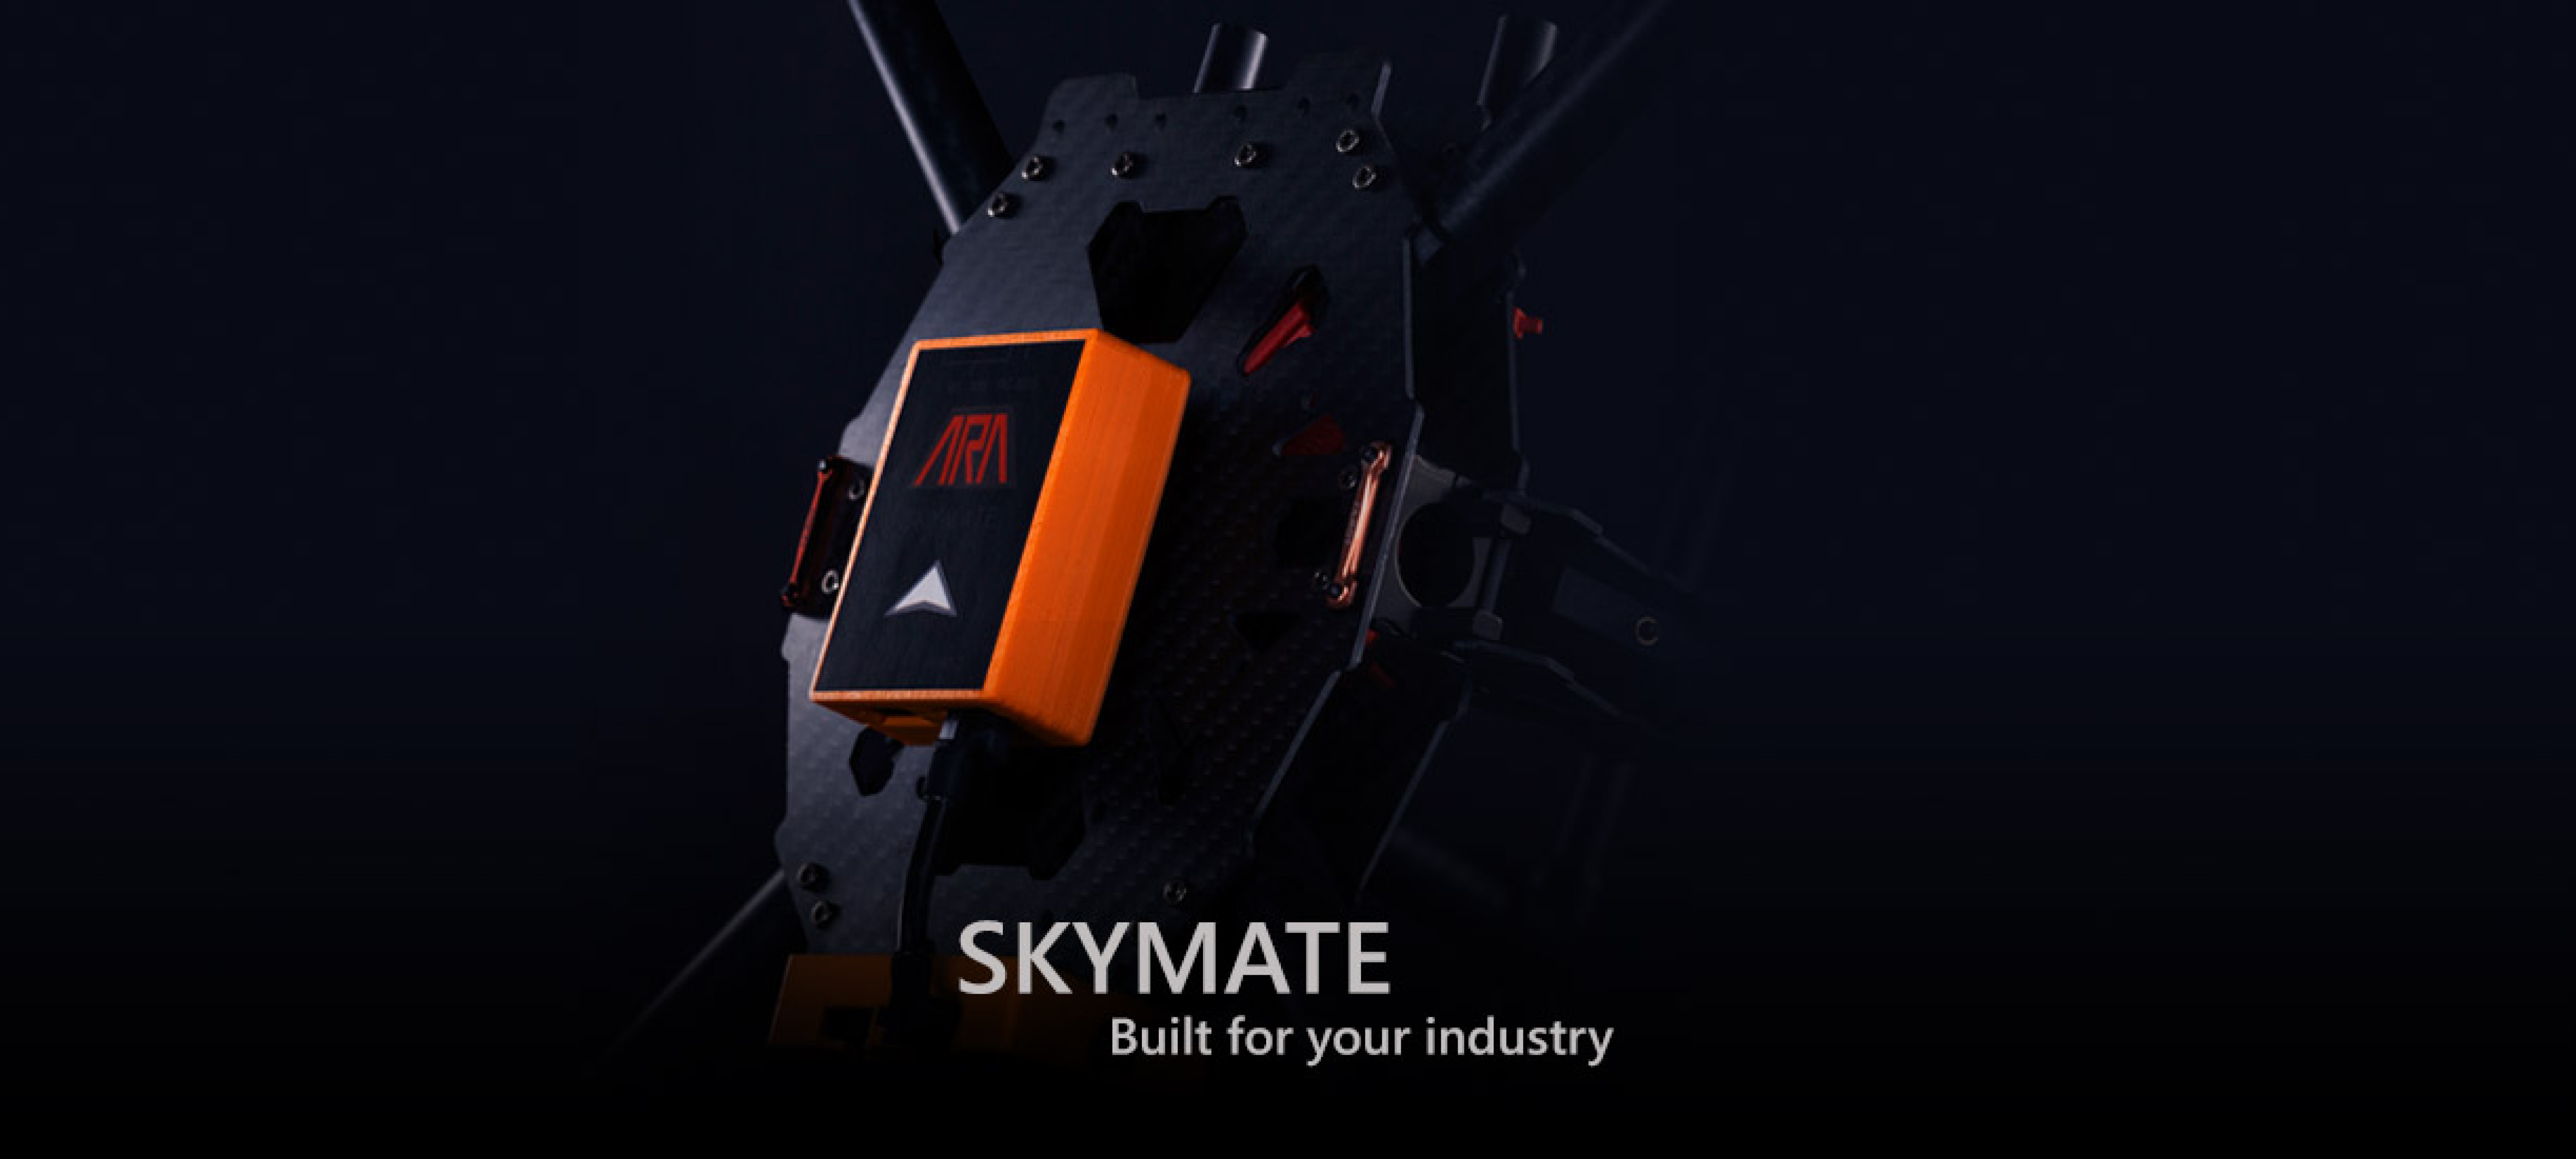 Skymate of ARA Robotique